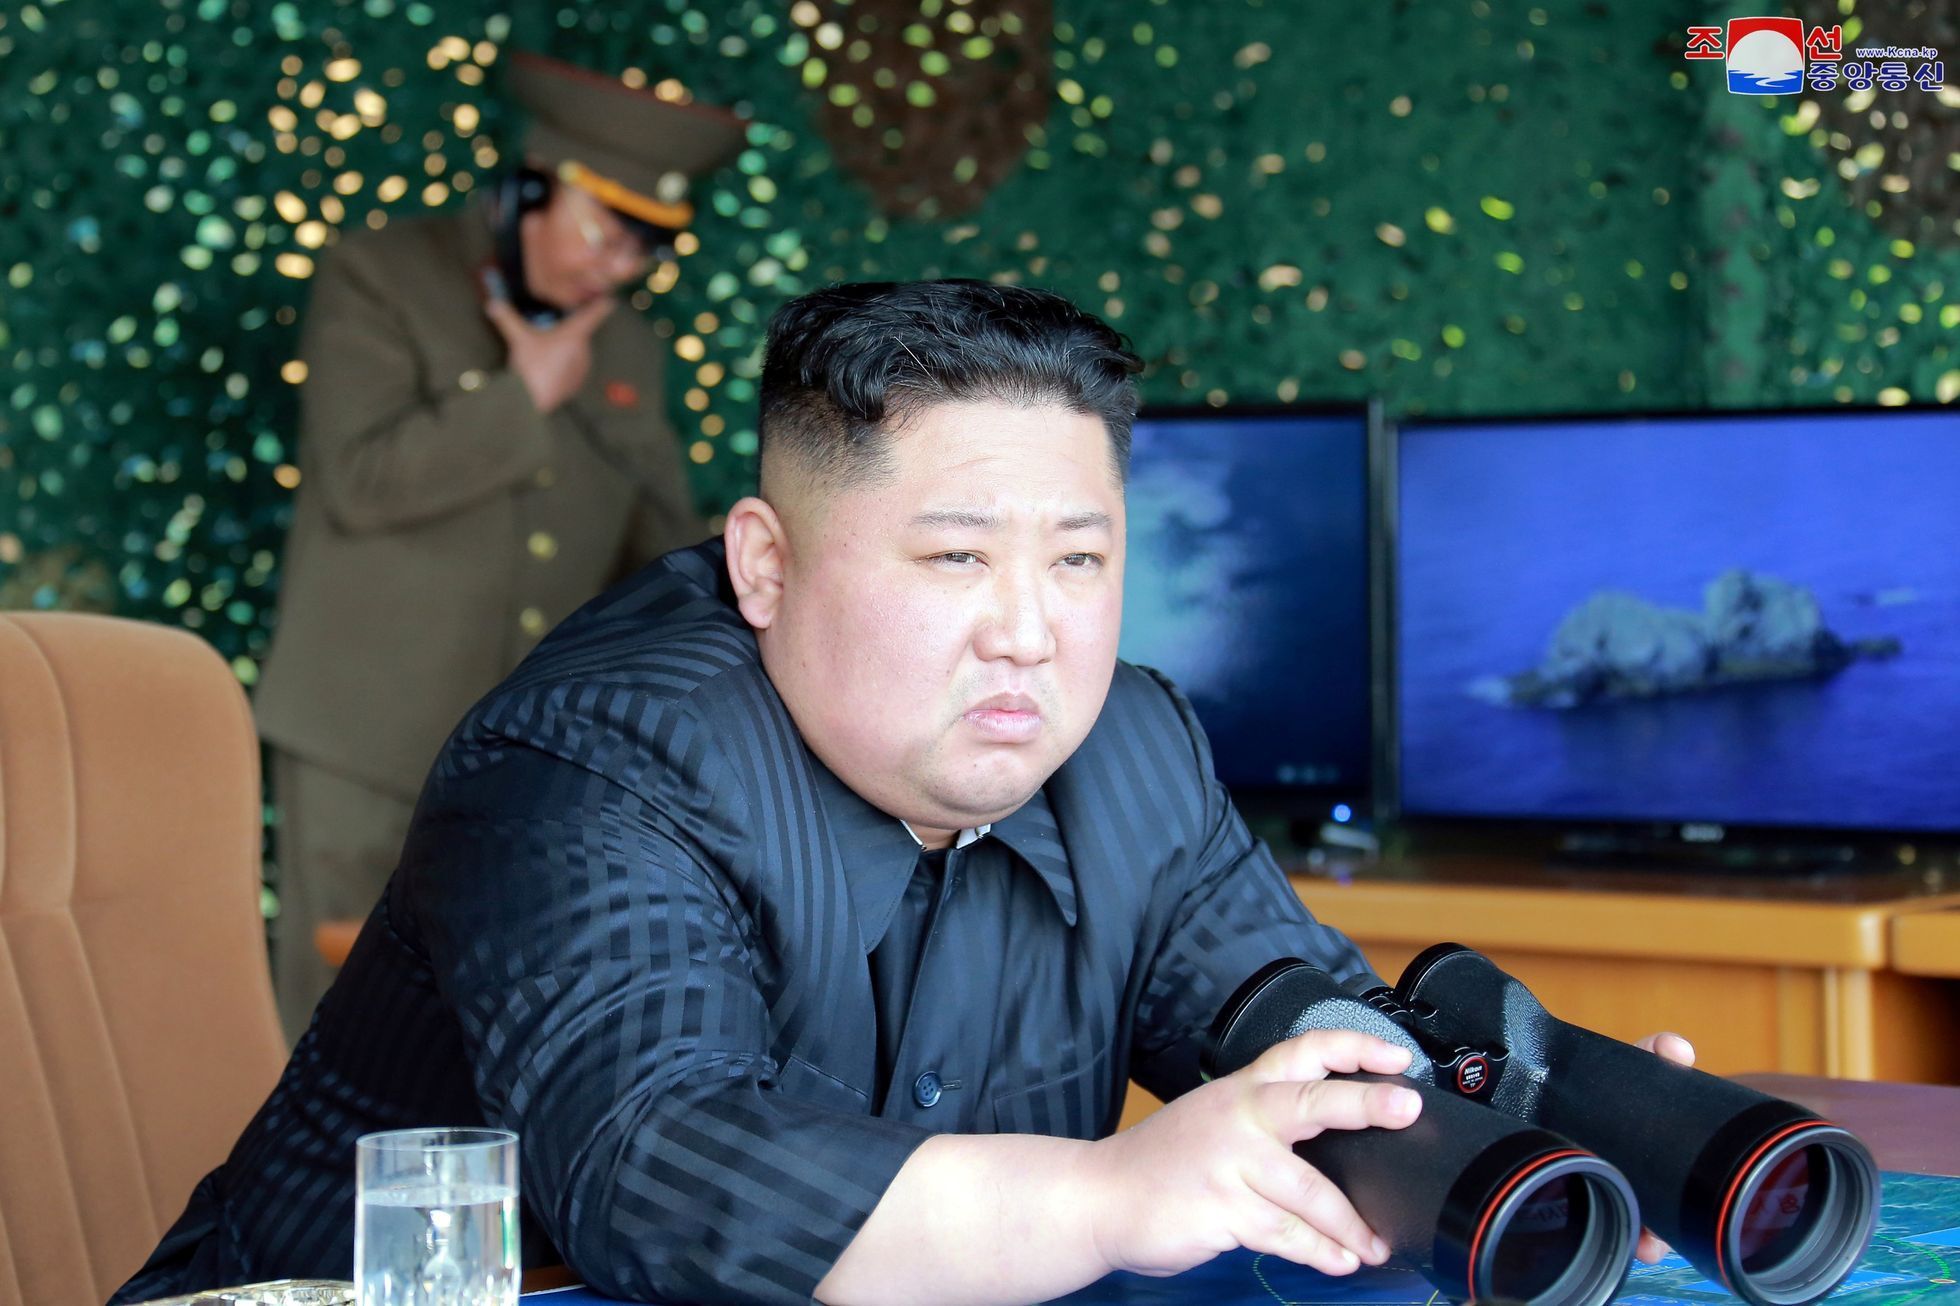 Kim Čong-un dohlíží na testy raketových zařízení